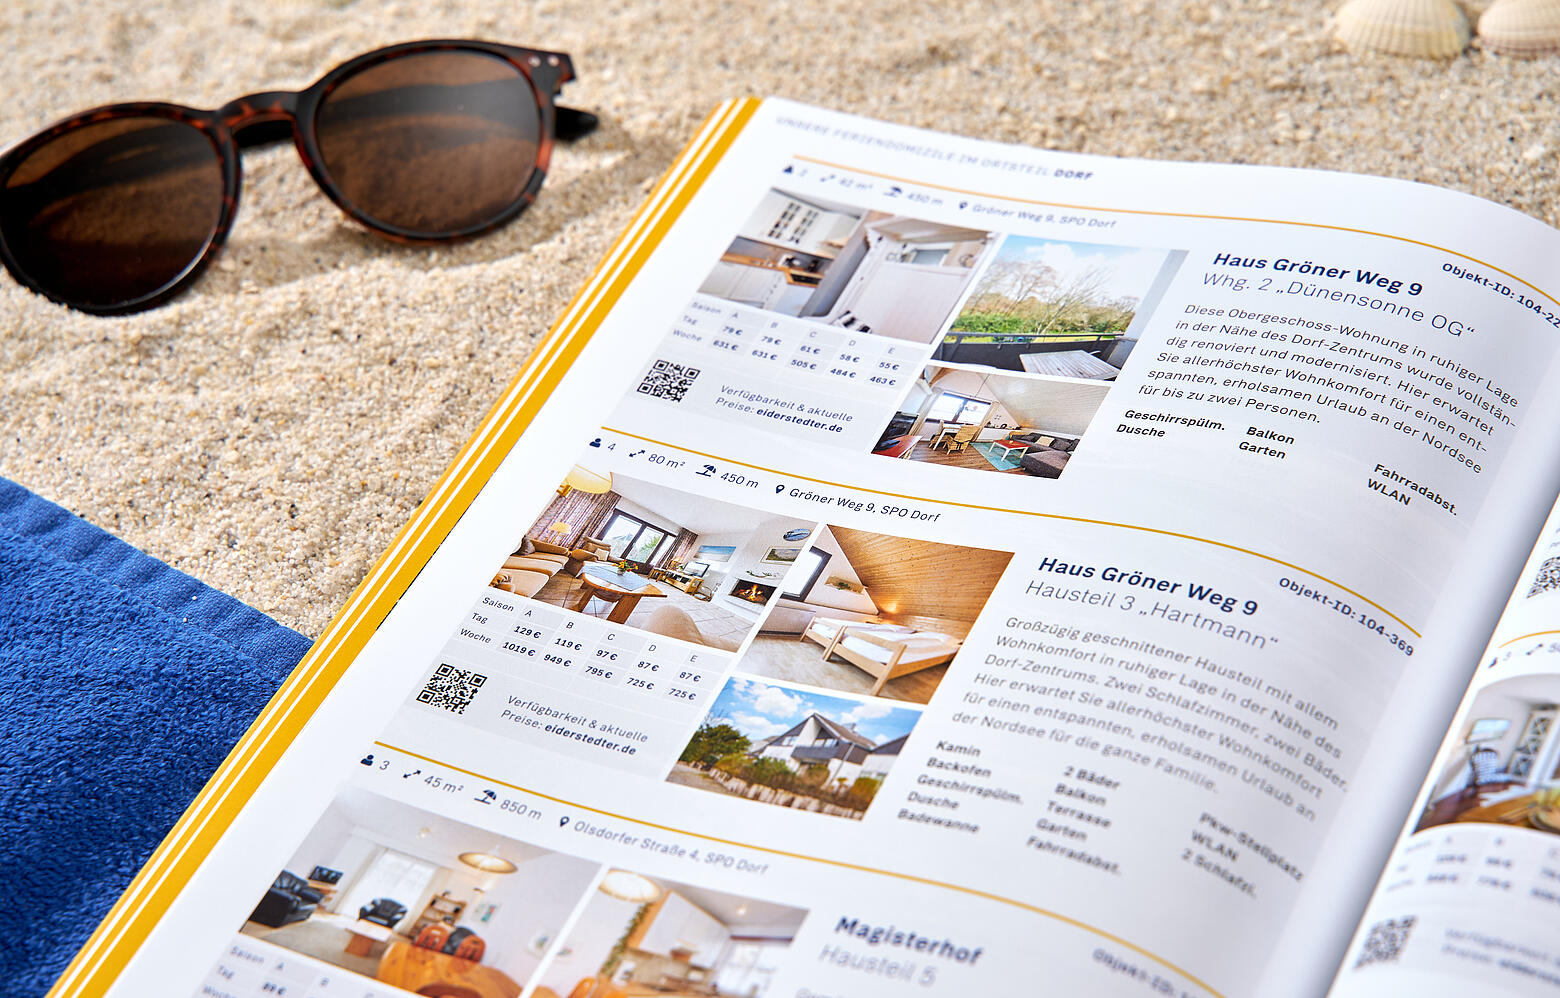 Eine aufgeschlagene Ausgabe des Eiderstedter-Magazins liegt am Strand zwischen einem Handtuch und einer Sonnenbrille.